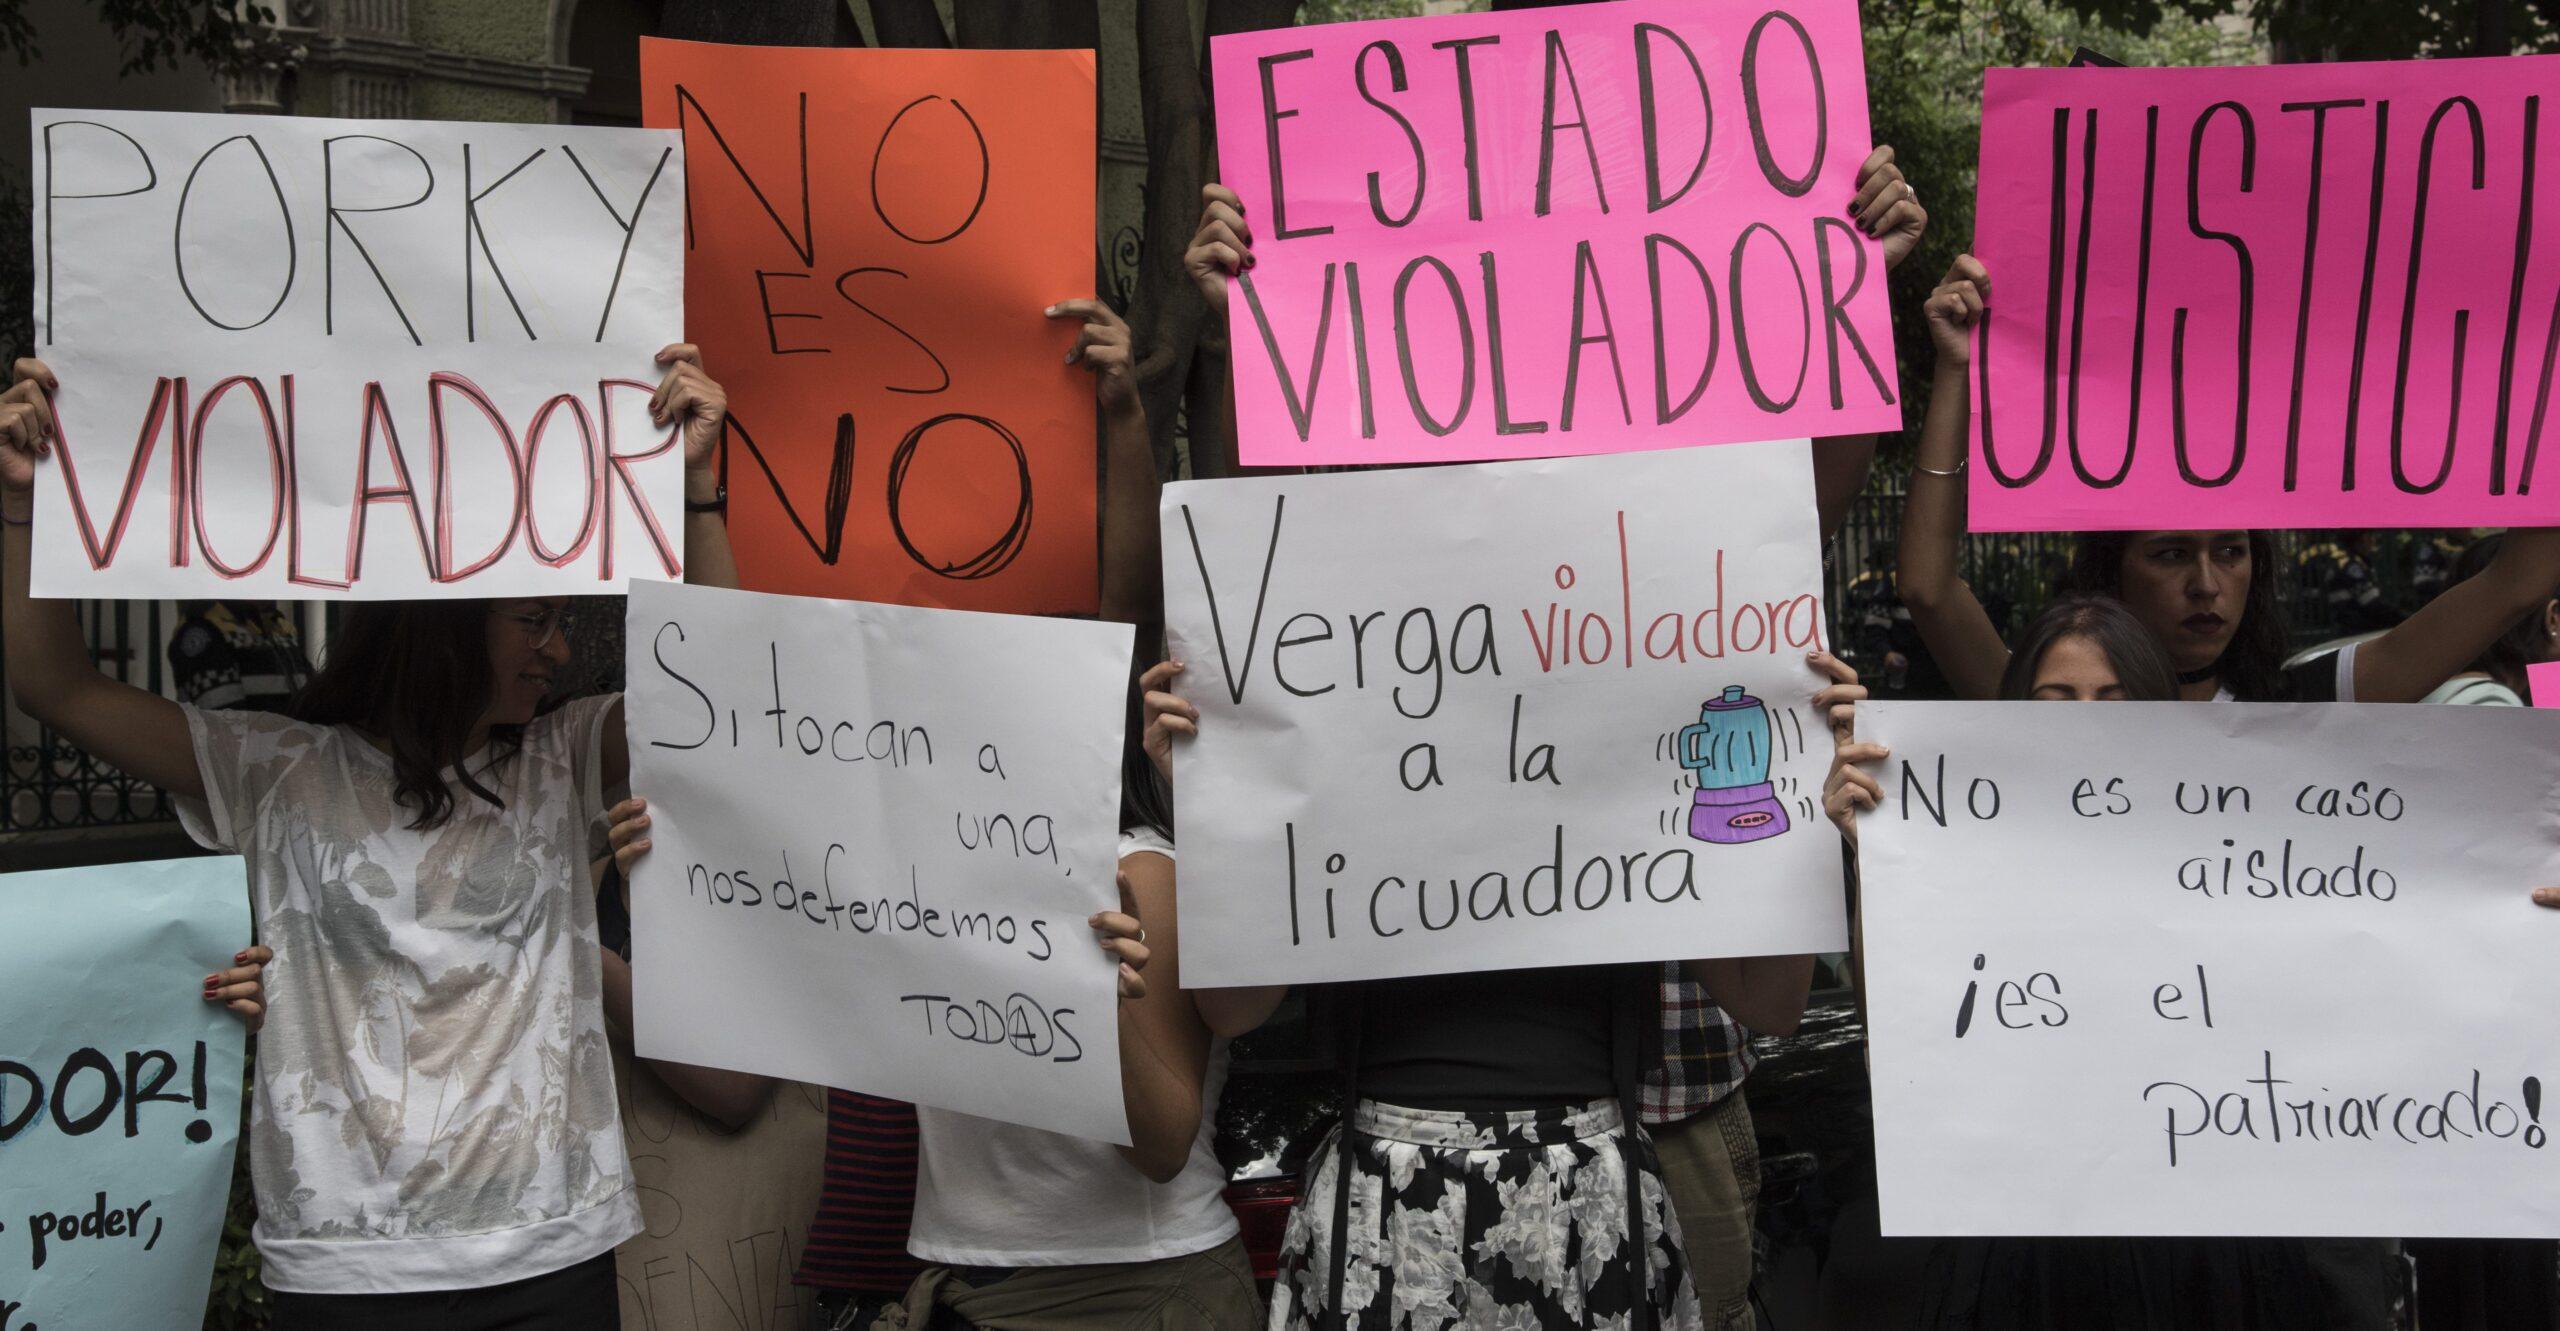 Investigarán a juez por sentencia contra violador en Veracruz; le dio 5 años y una multa de 70 pesos